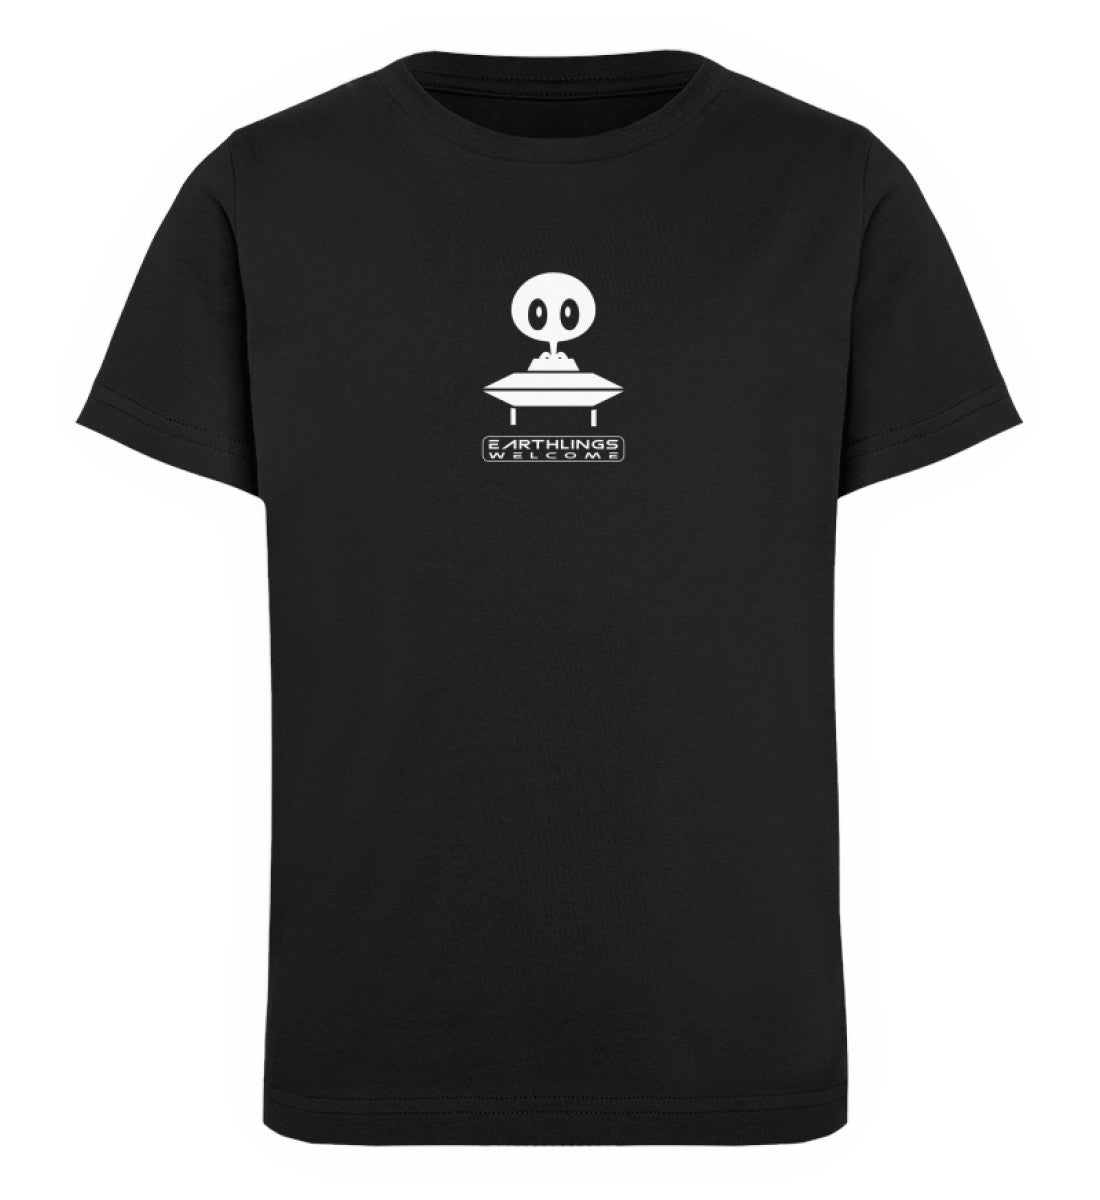 Schwarzes Kinder T-Shirt für Mädchen und Jungen bedruckt mit dem Design der Roger Rockawoo Kollektion Community Ufo alien earthlings welcome